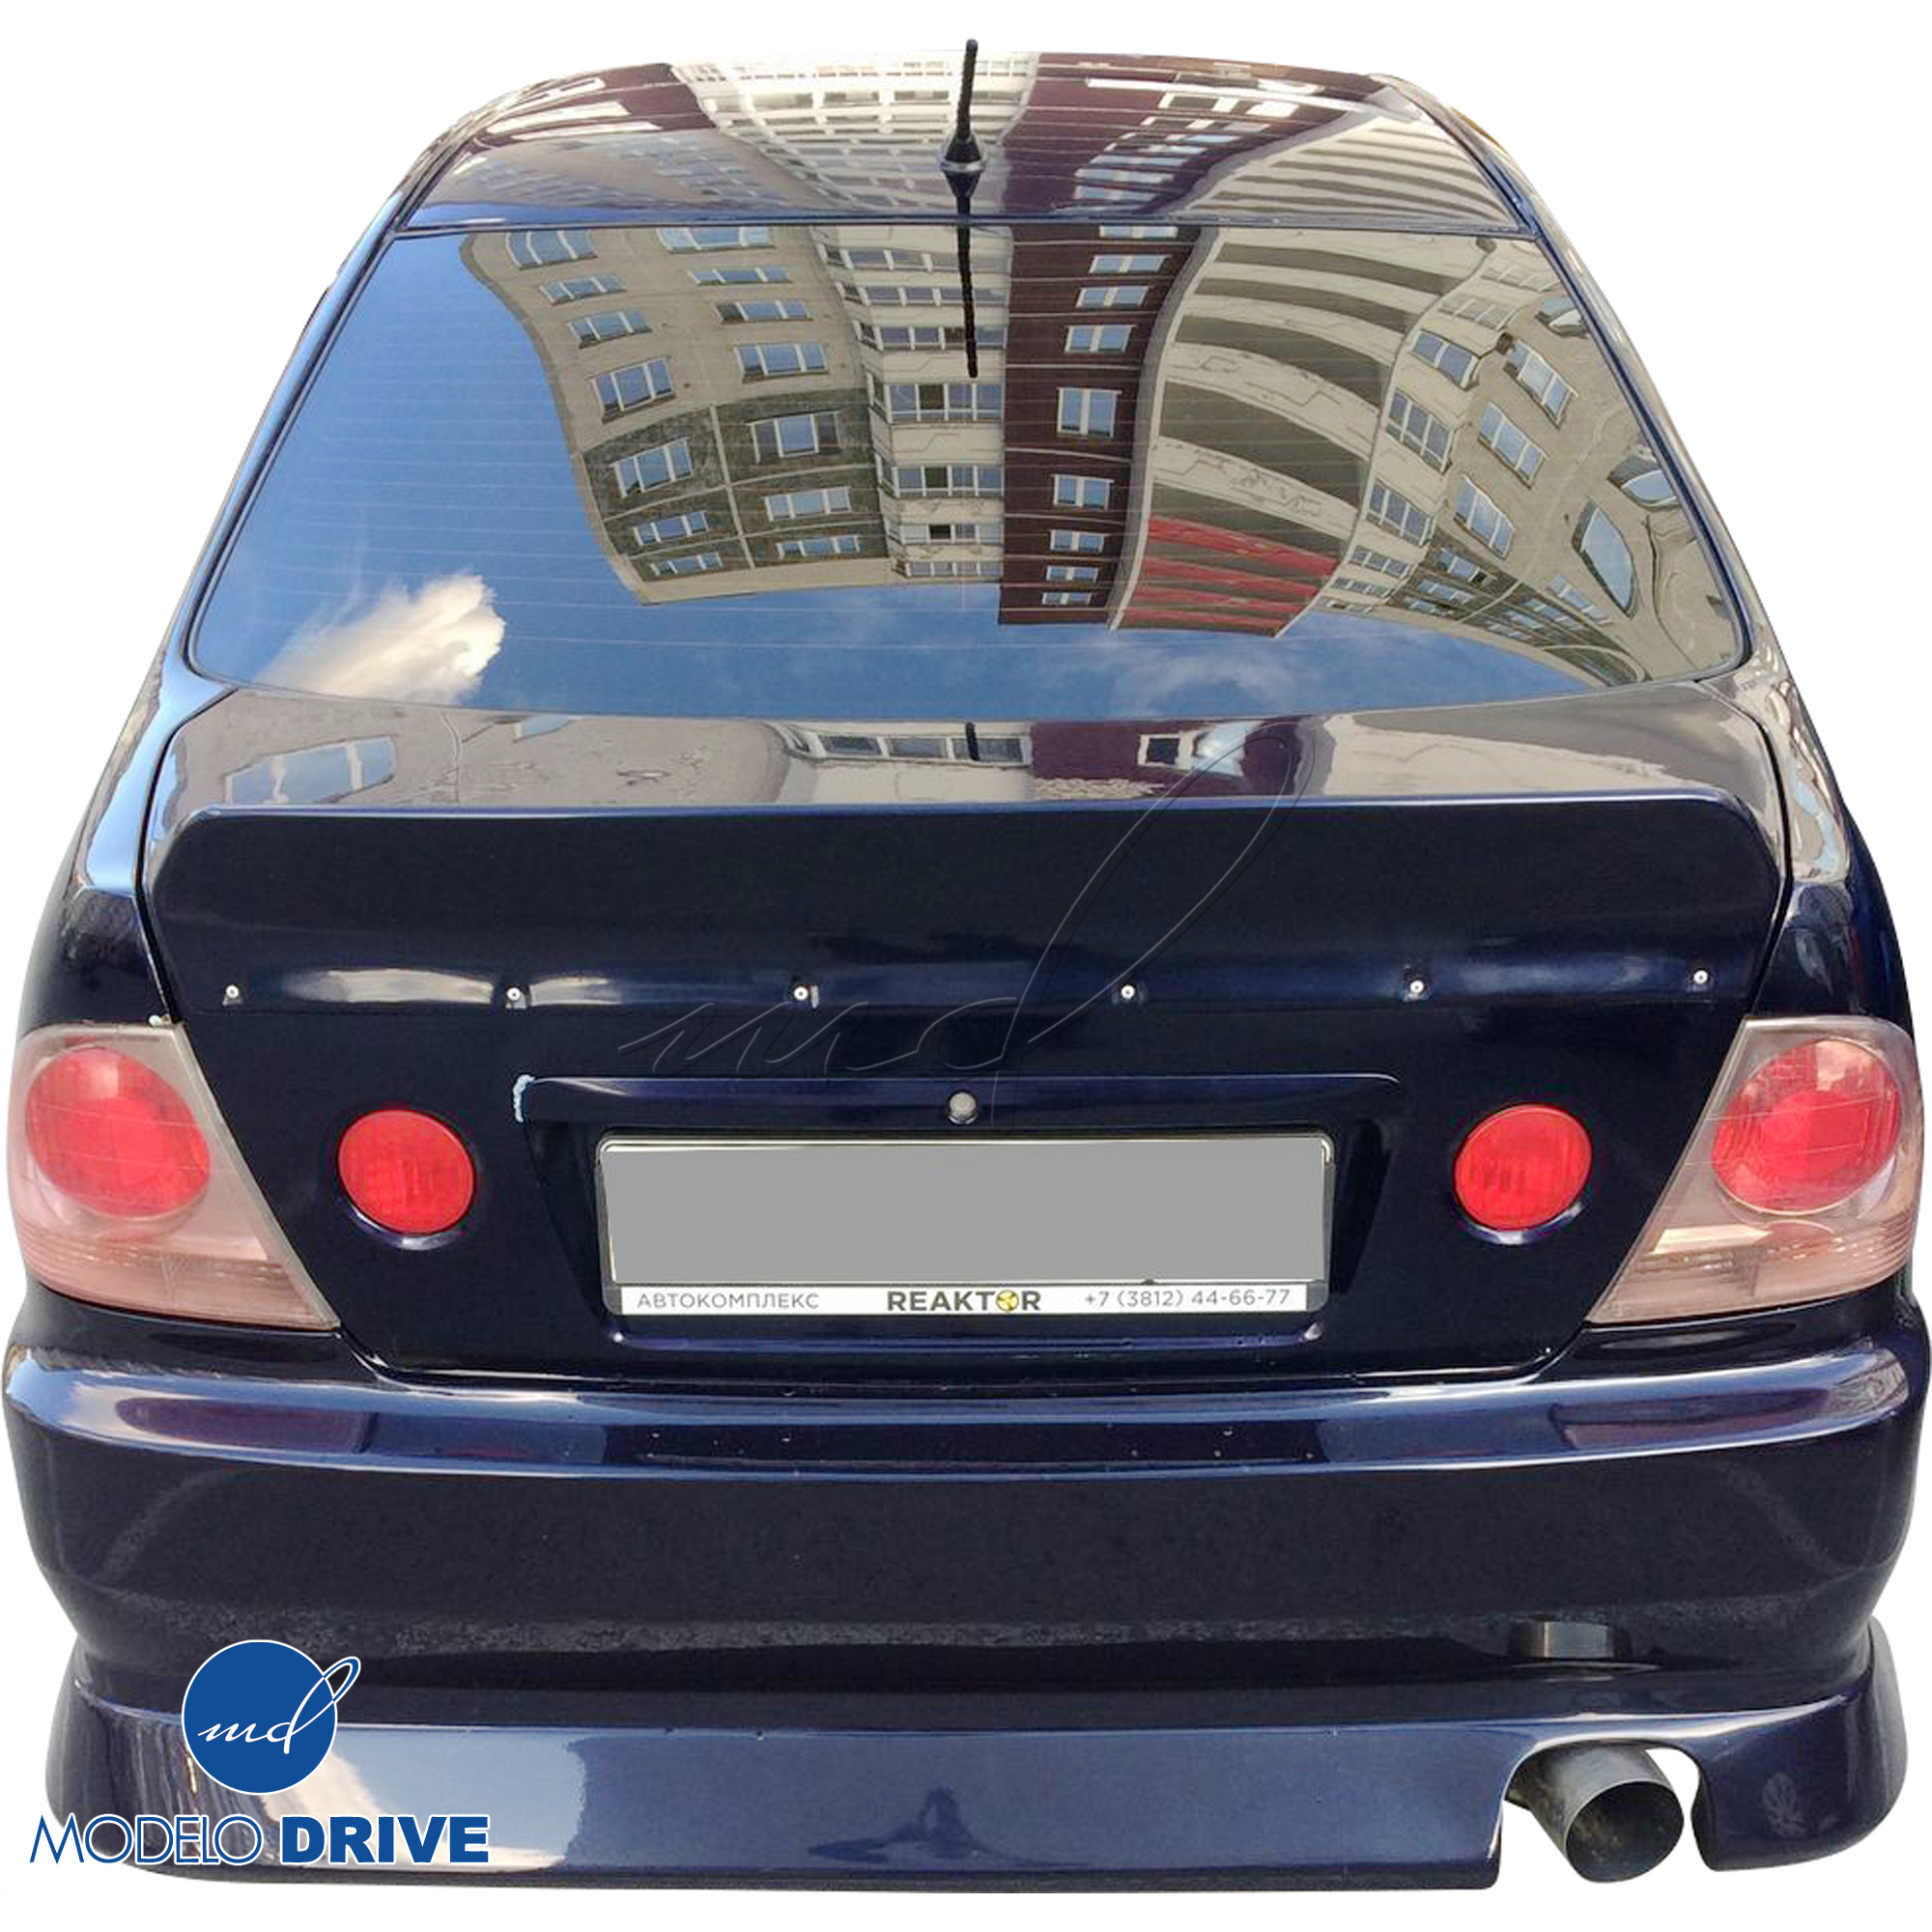 ModeloDrive FRP BSPO Rear Bumper > Lexus IS300 2000-2005> 4dr - Image 10